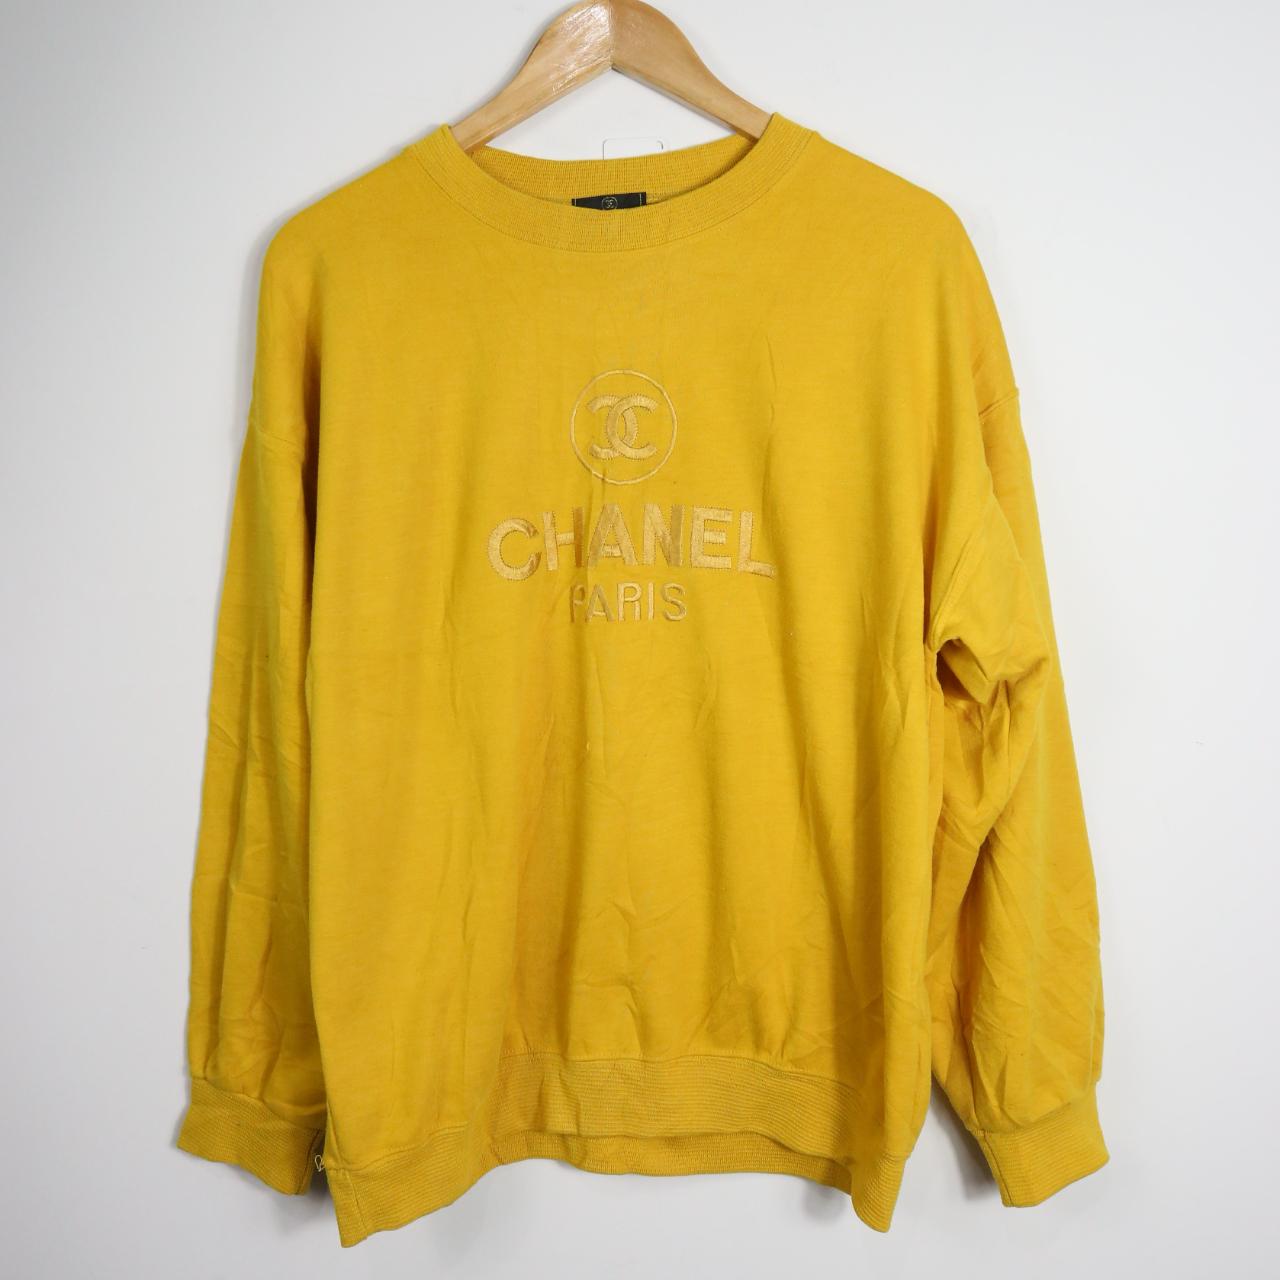 SW164 Vintage 80s Chanel Paris Sweatshirt (M), Size